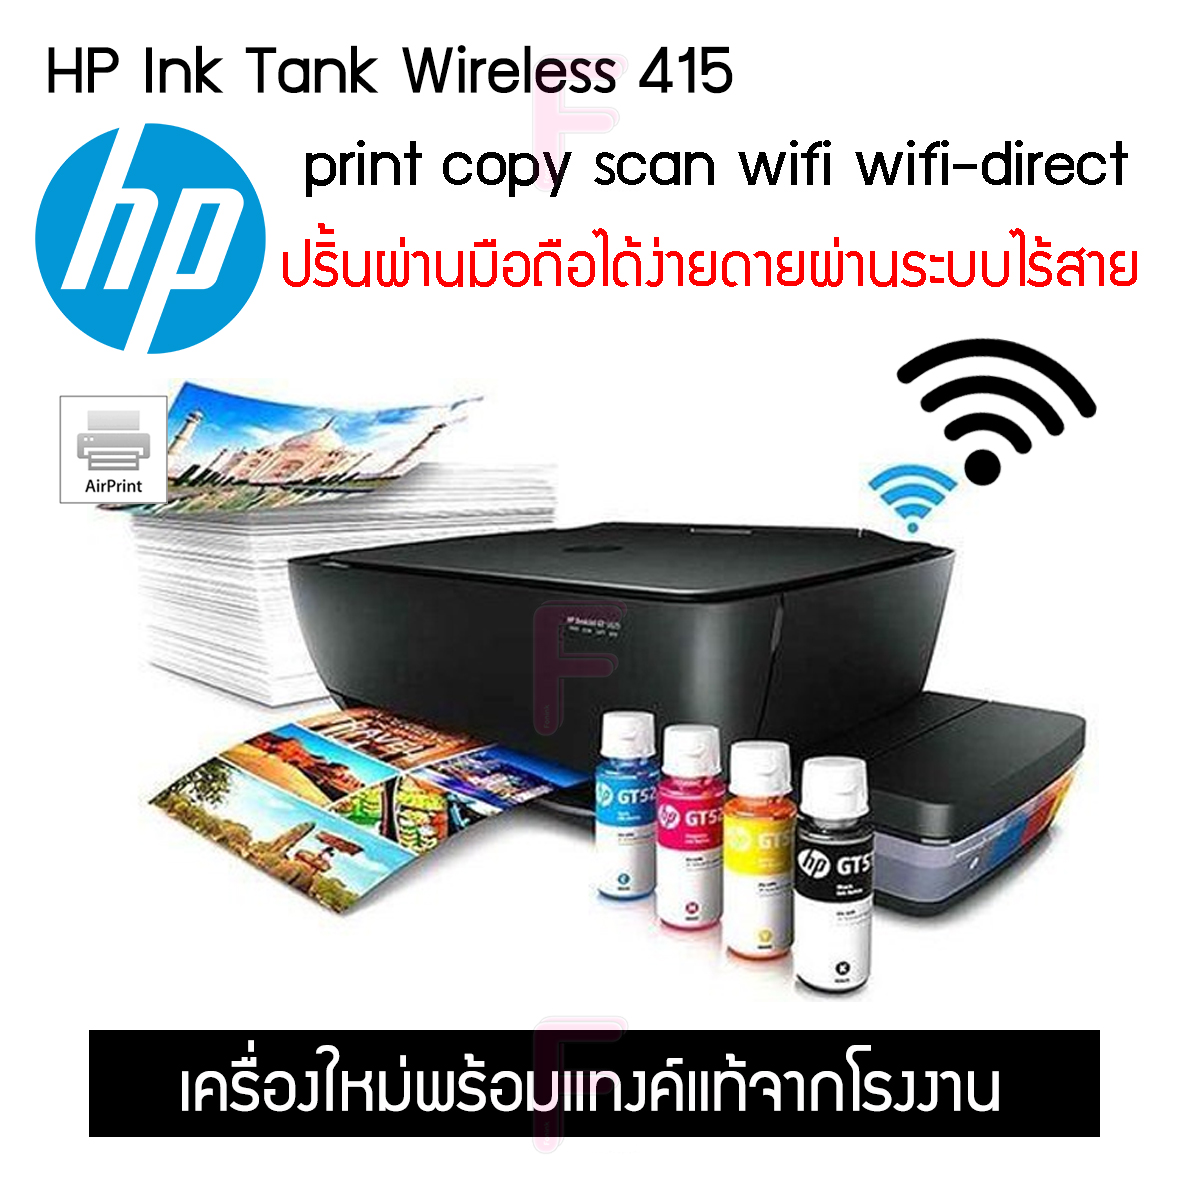 เครื่องปริ้น HP Ink Tank Wireless 415 เครื่องปริ้นงาน พิมพ์งาน